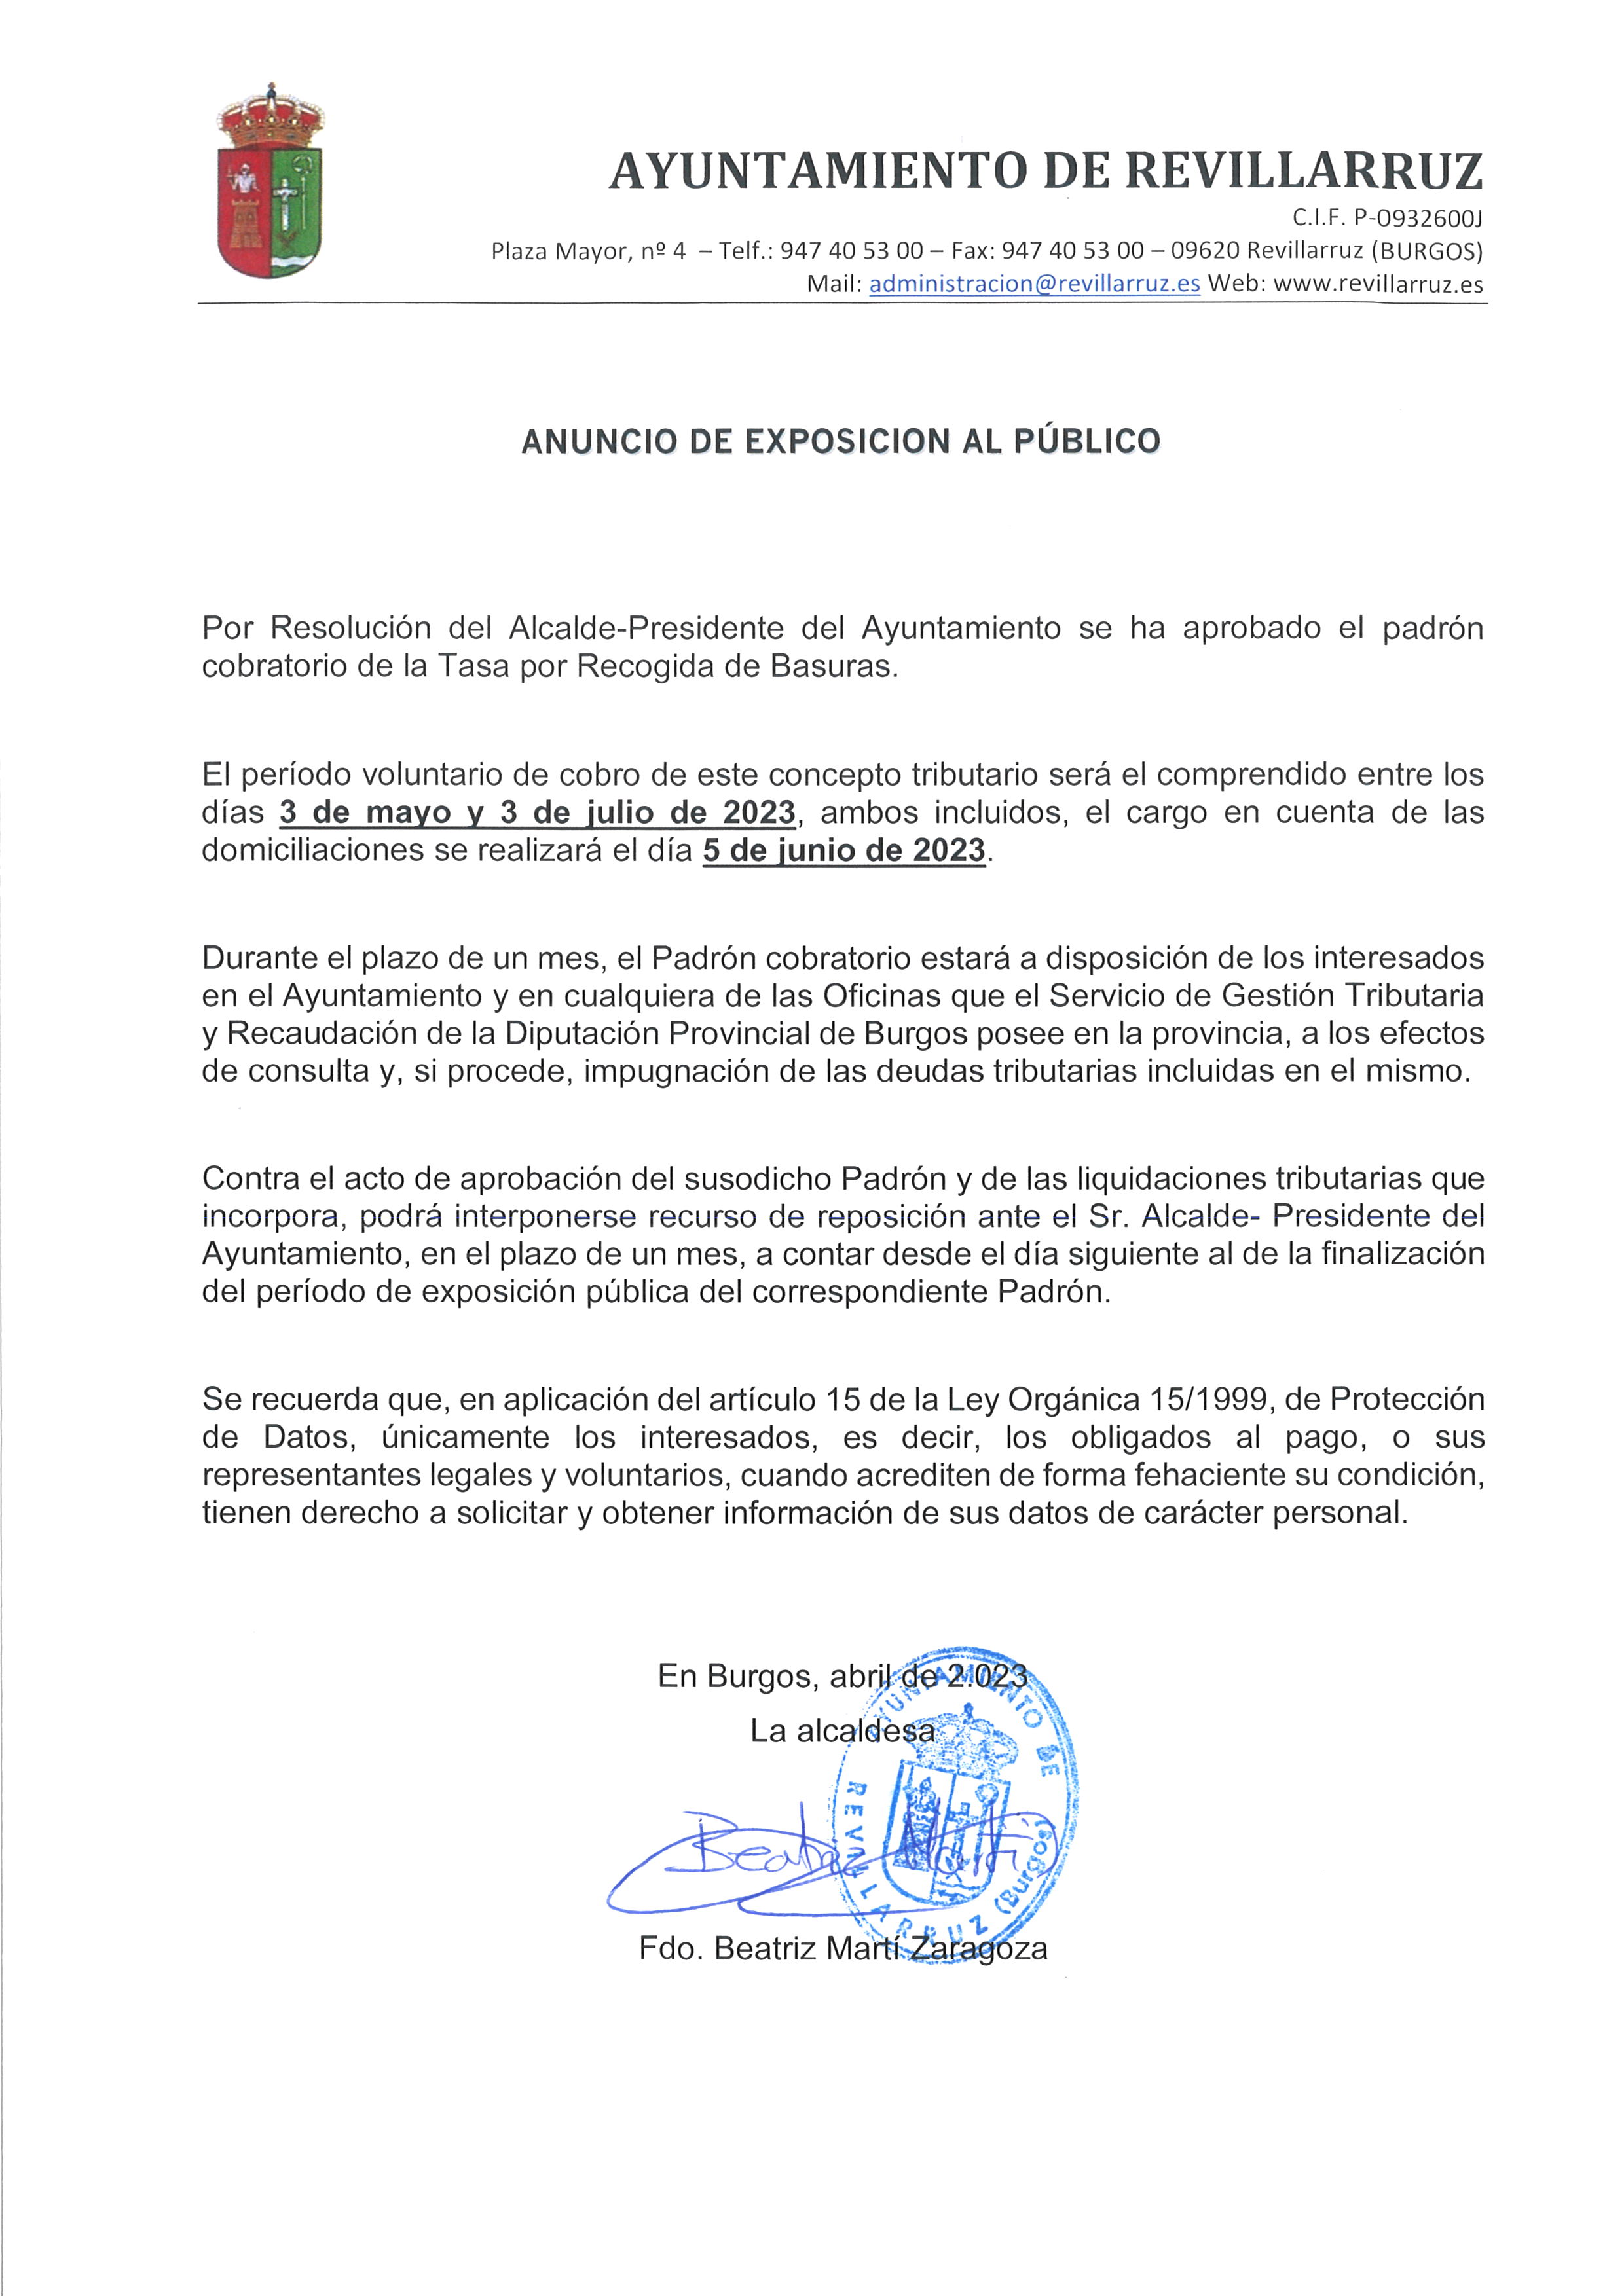 ANUNCIO DE EXPOSICIÓN AL PÚBLICO - PADRÓN BASURAS 2023